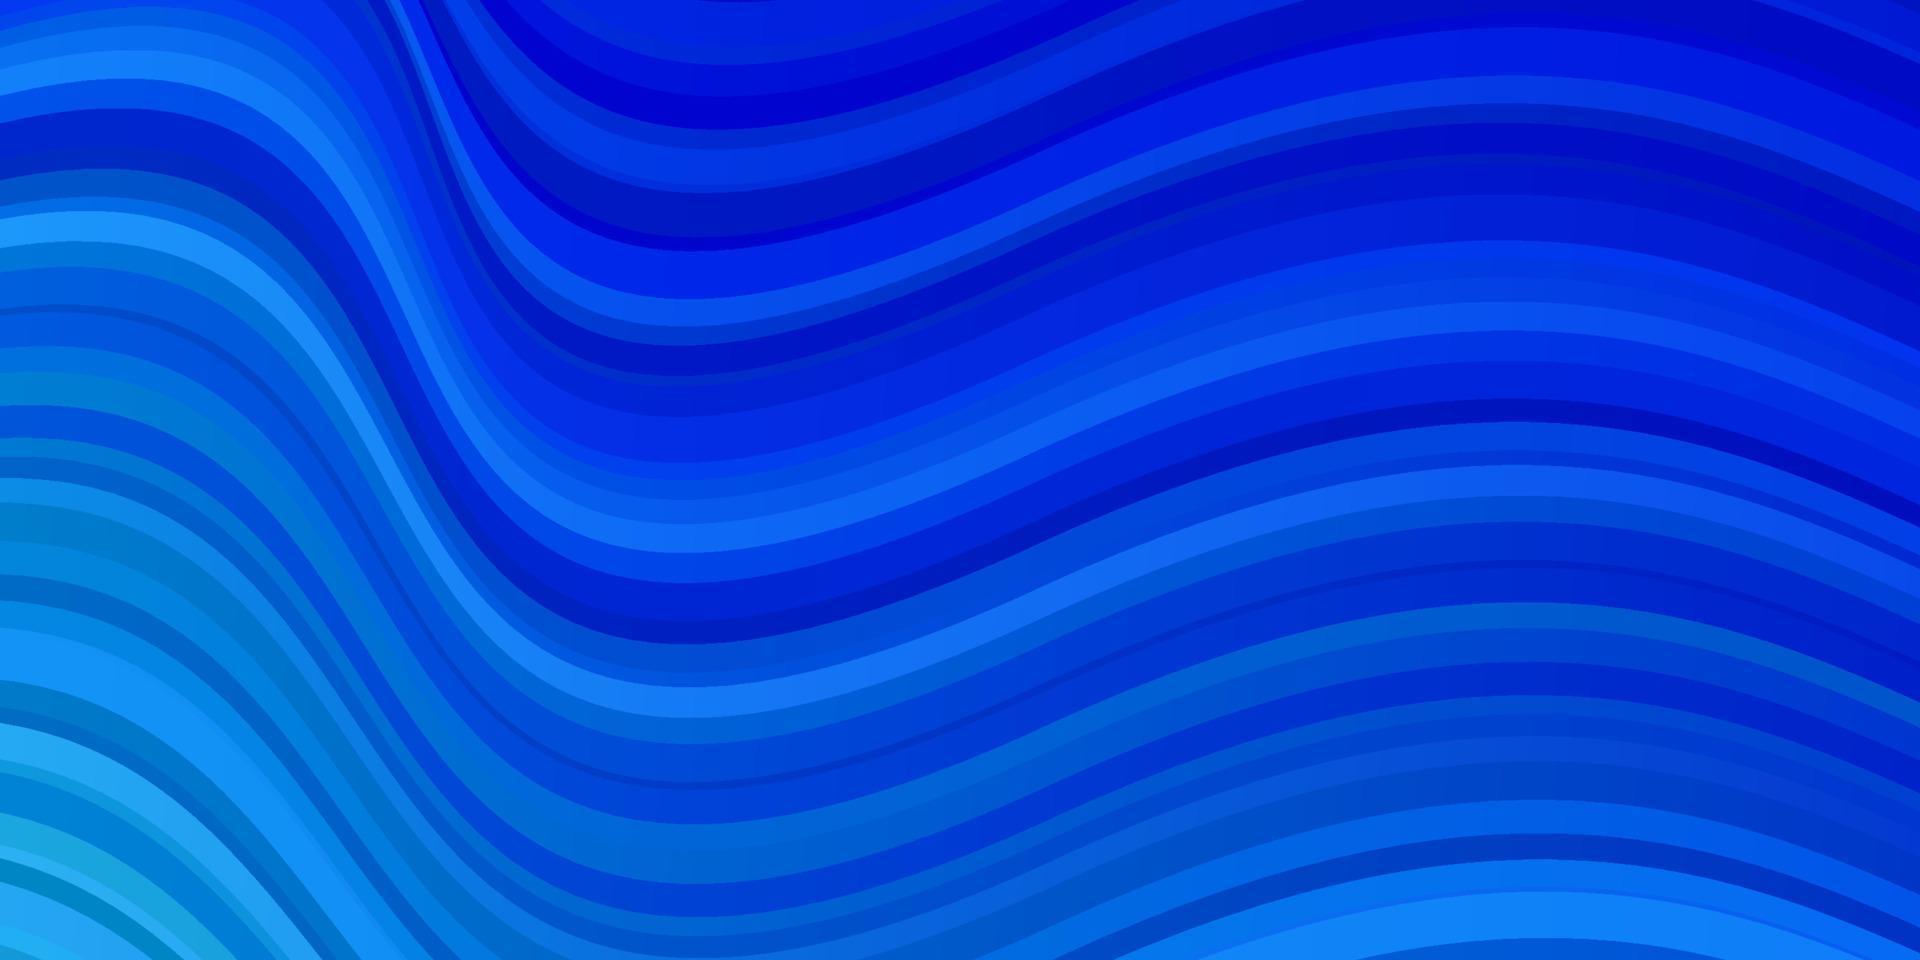 padrão de vetor azul claro com curvas.